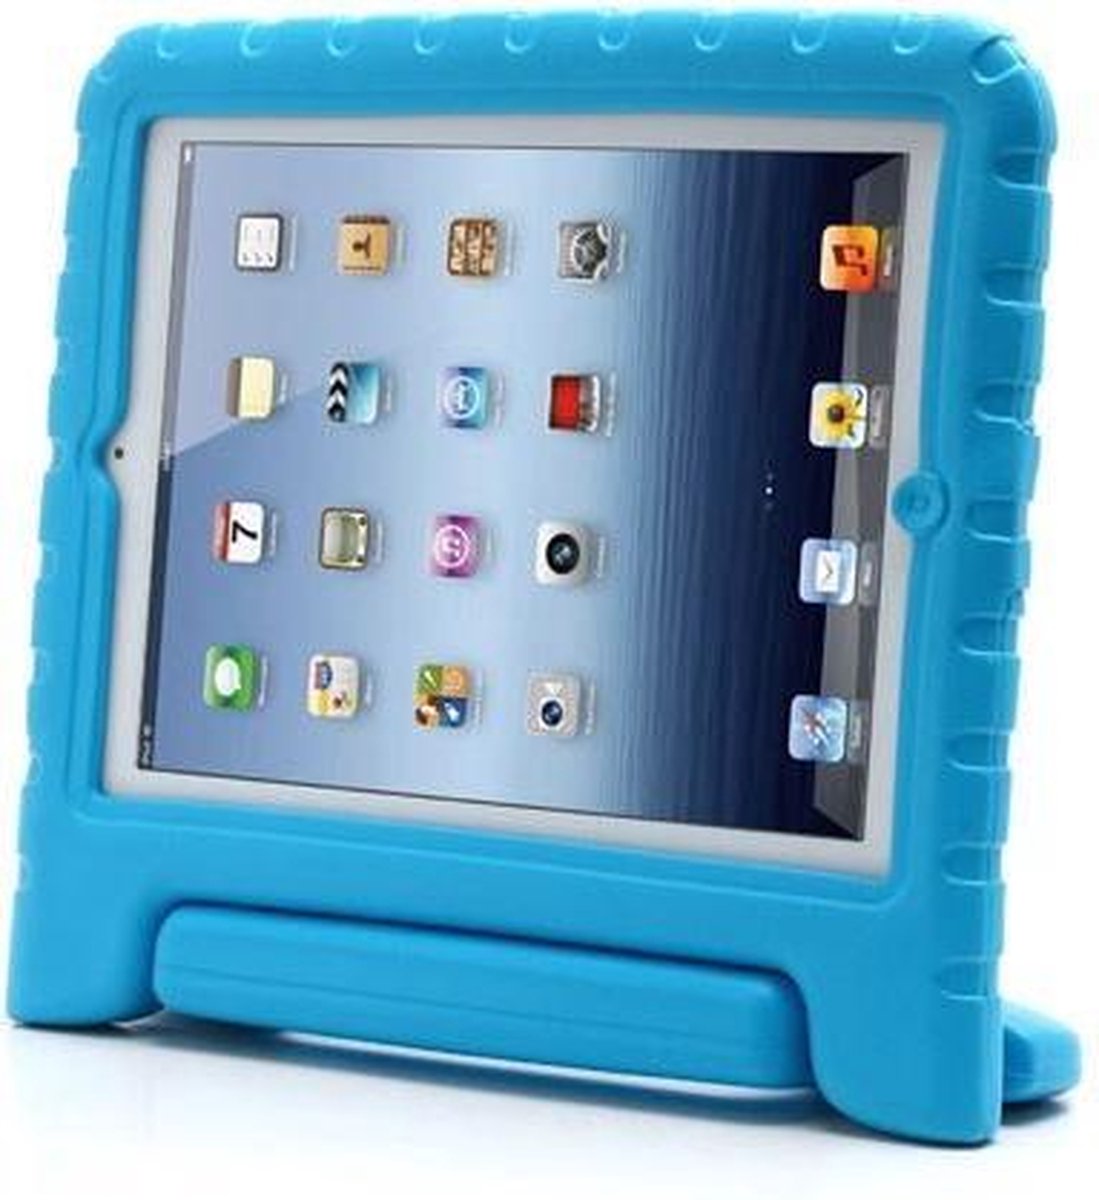 KIDS portable EVA foam case voor iPad 2, 3 en 4th gen - Blauw